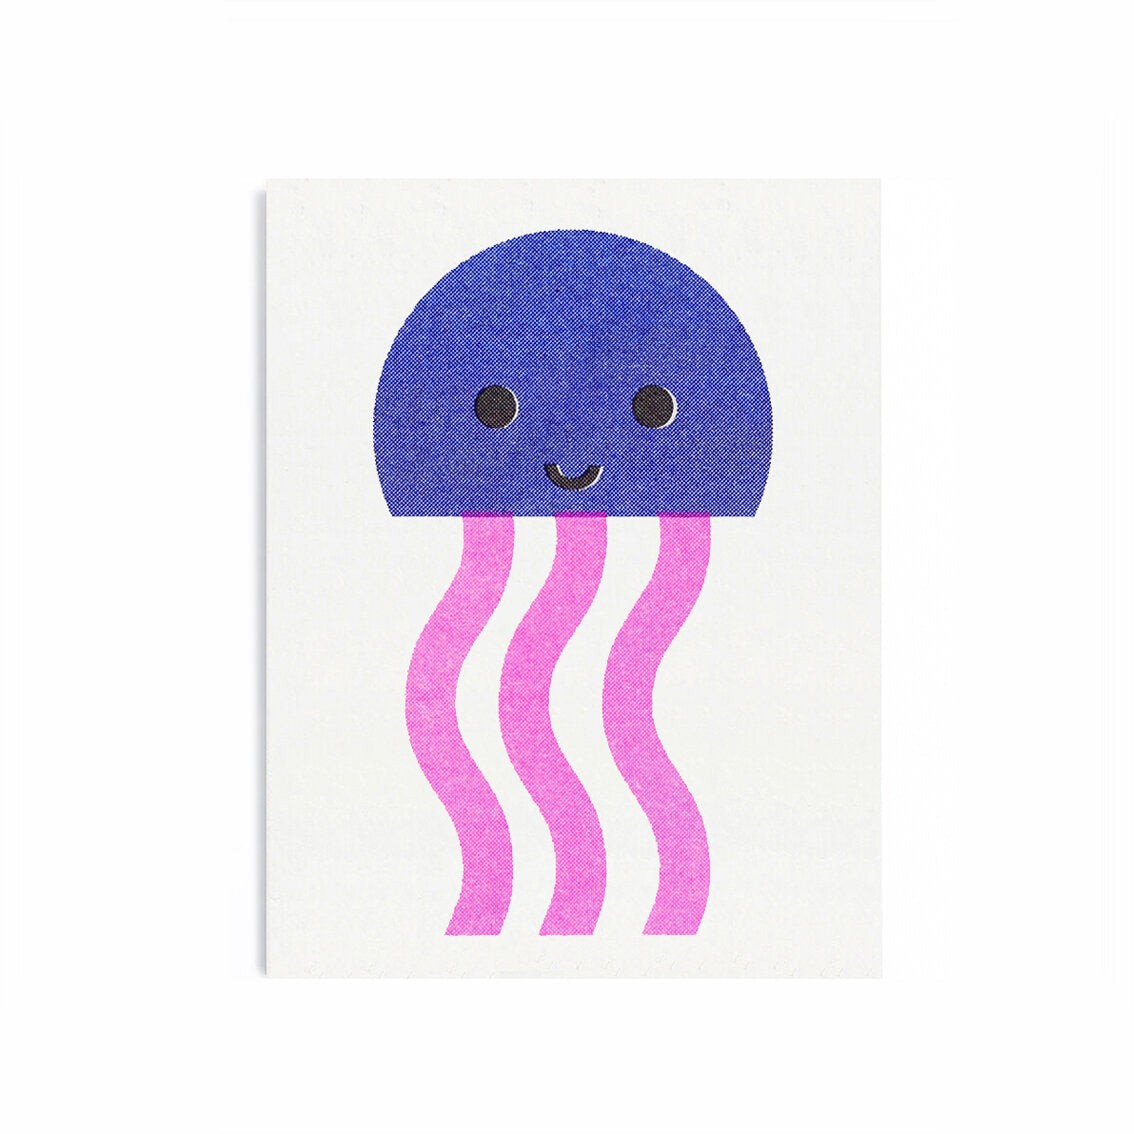 Jelly Fish Mini Card